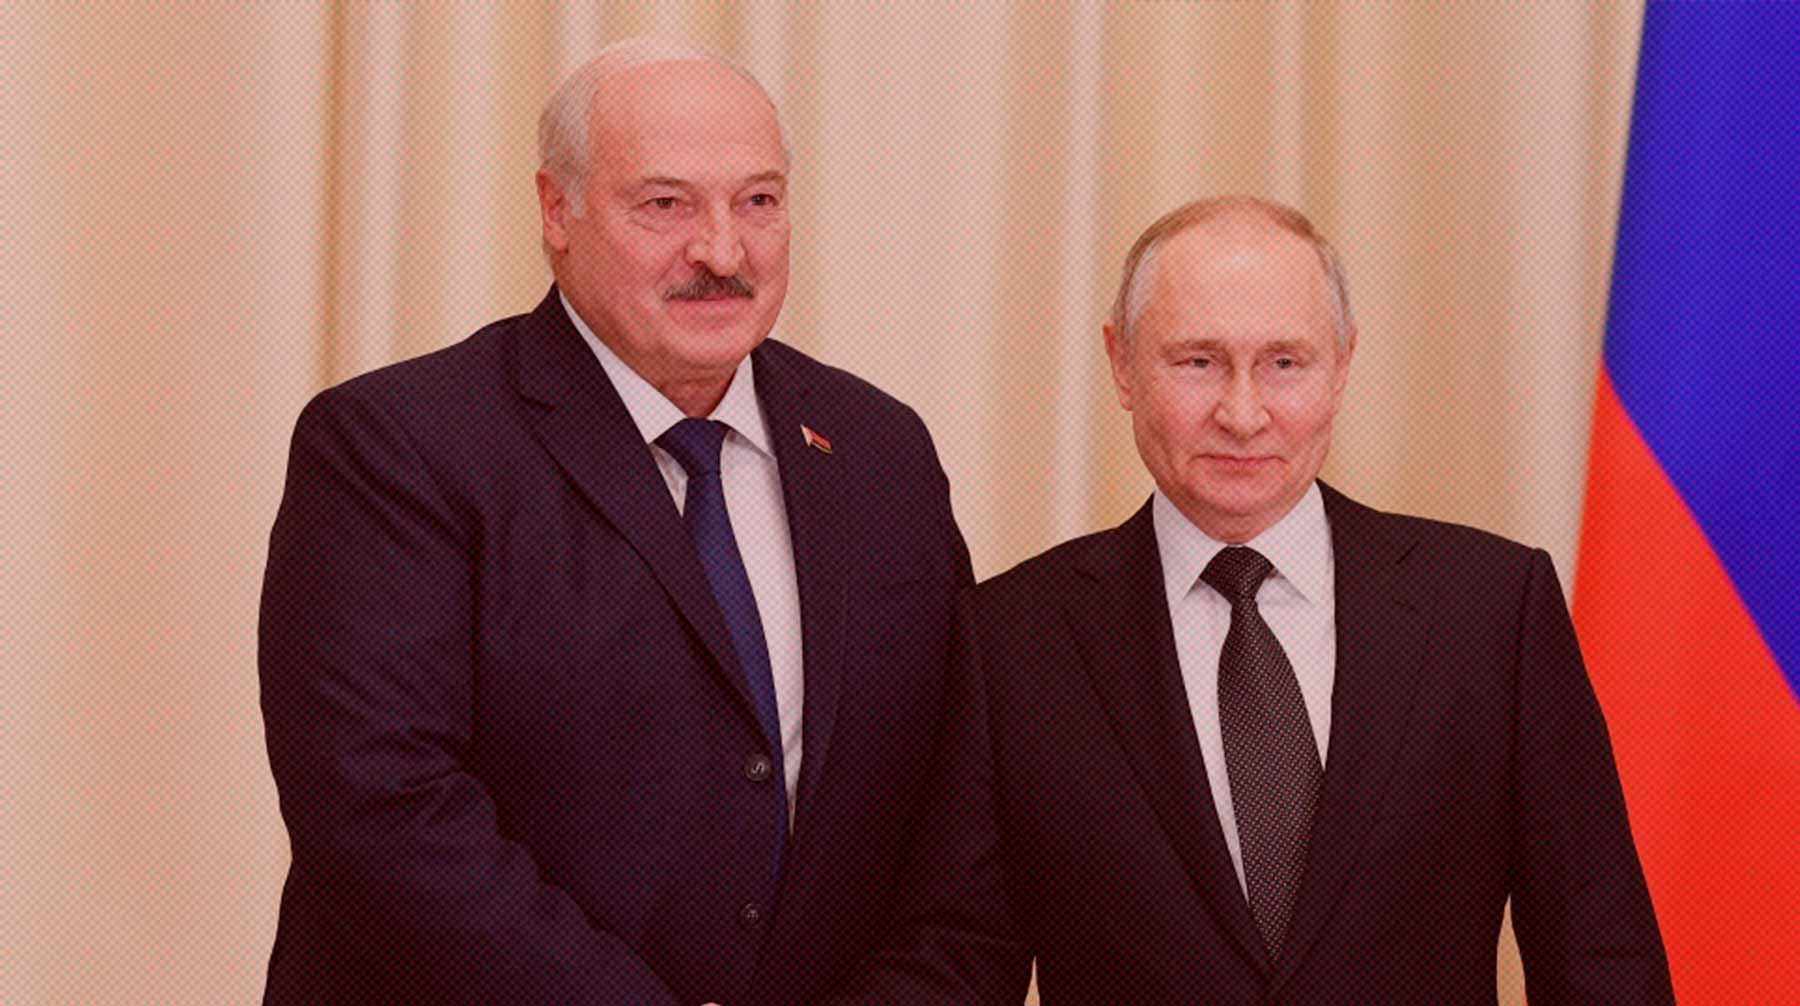 Политики также планируют обсудить взаимодействие в рамках Союзного государства Президент РФ Владимир Путин и президент Белоруссии Александр Лукашенко